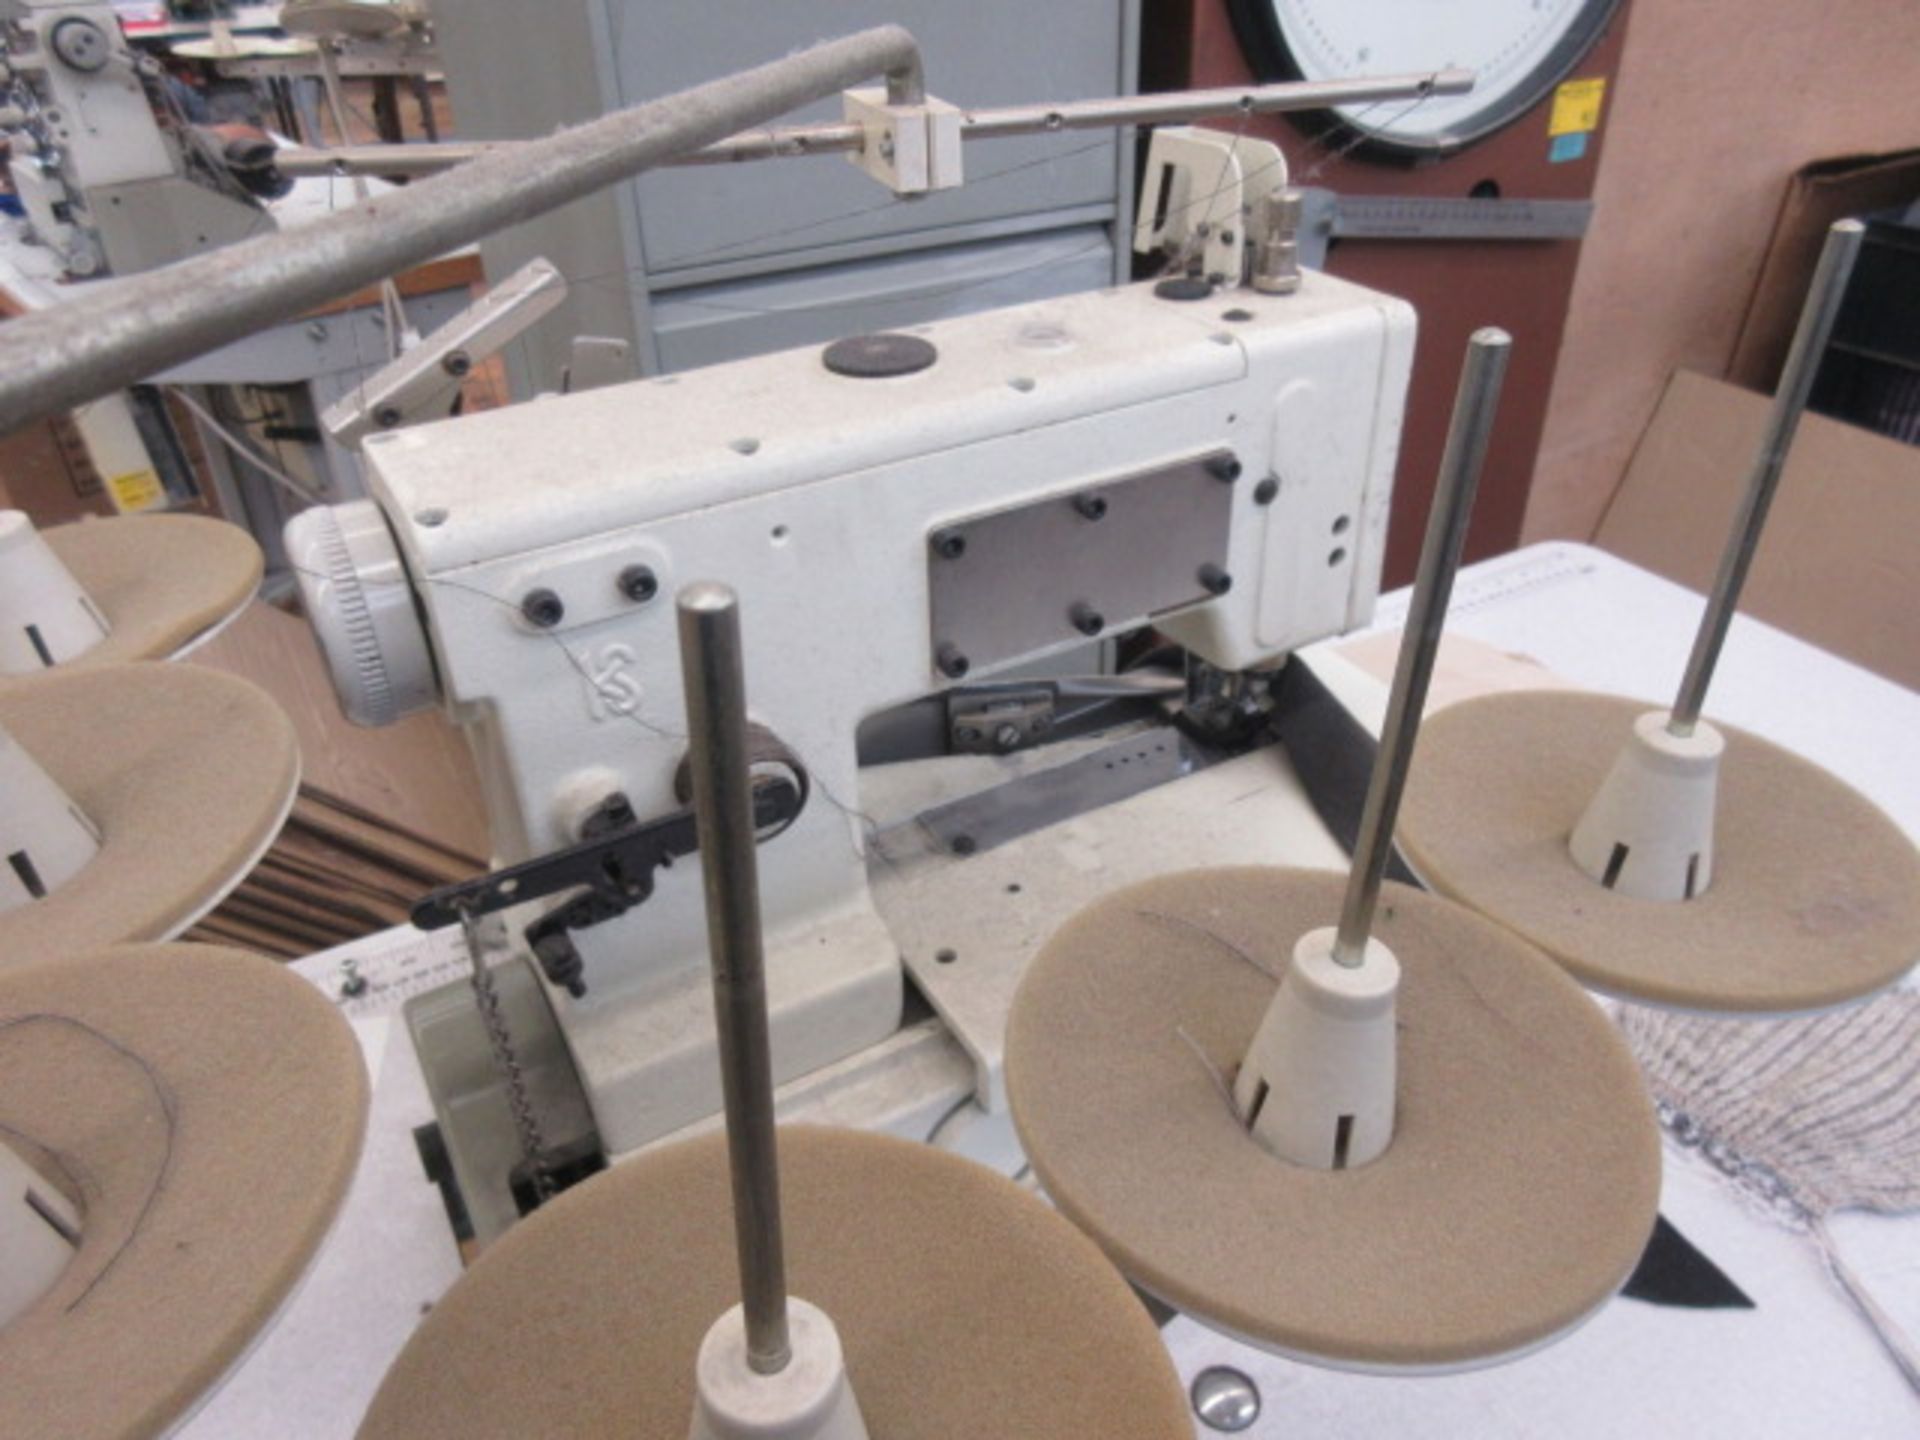 Kansai WX-8803F sewing machine (2012) - Image 3 of 4